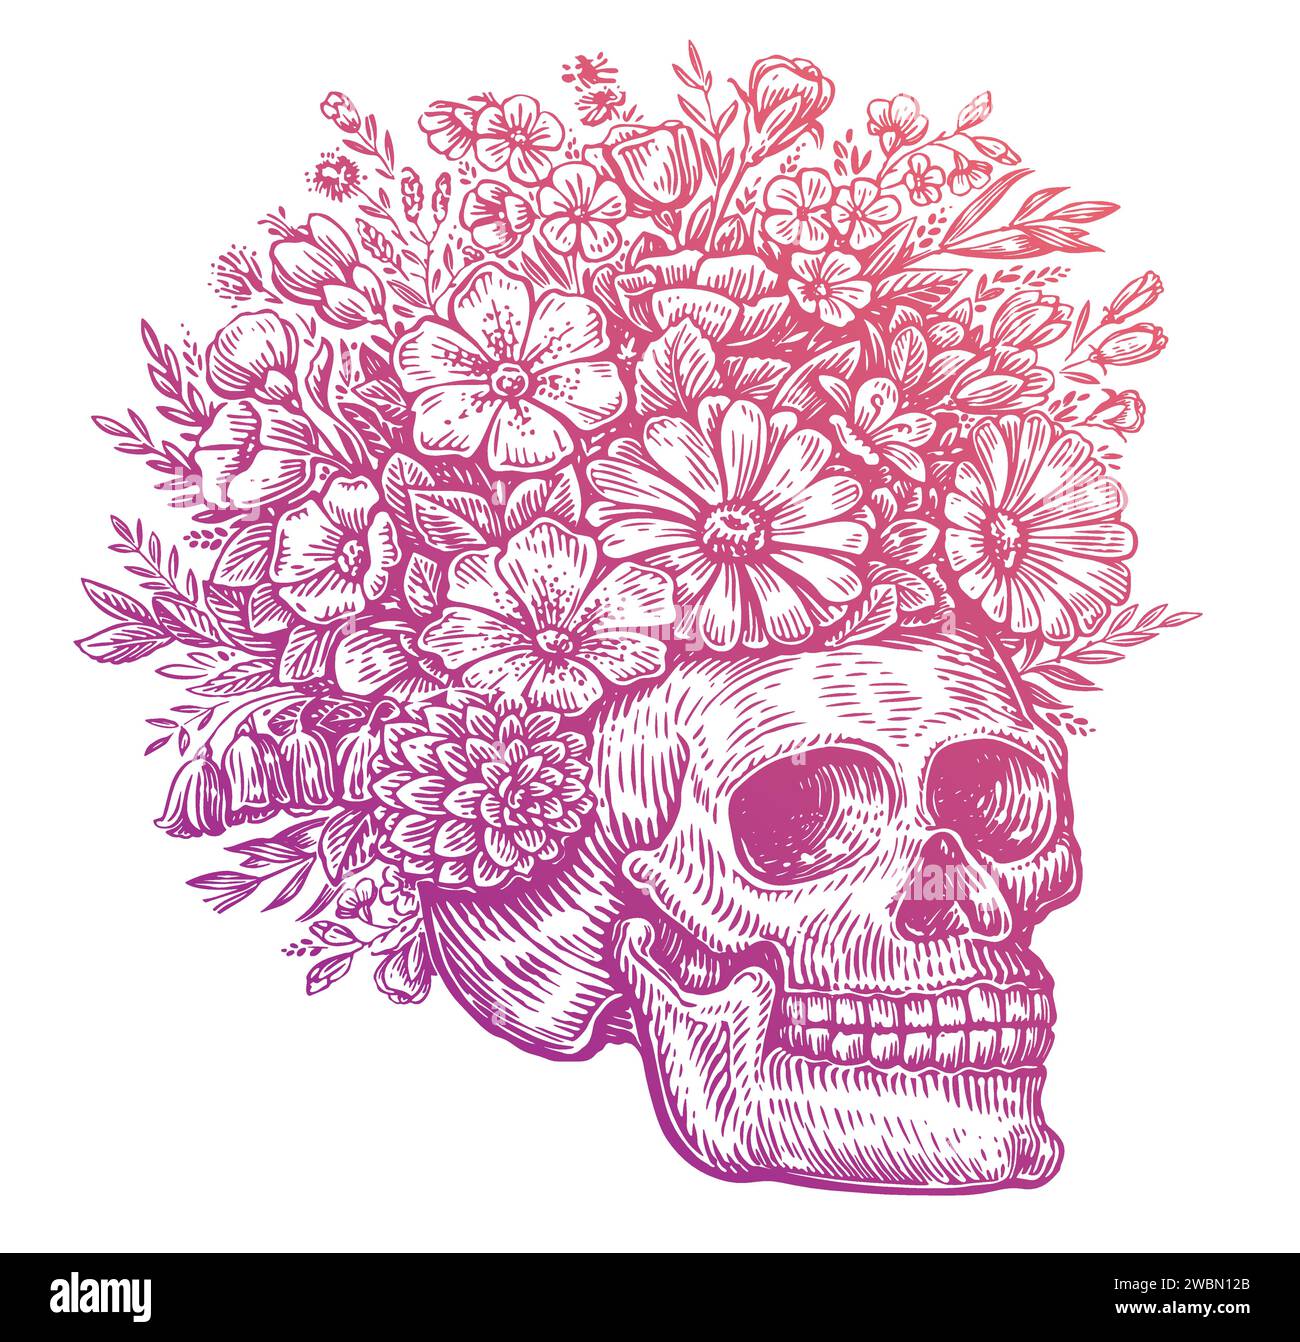 Teschio umano con fiori. Illustrazione vettoriale disegnata a mano Illustrazione Vettoriale